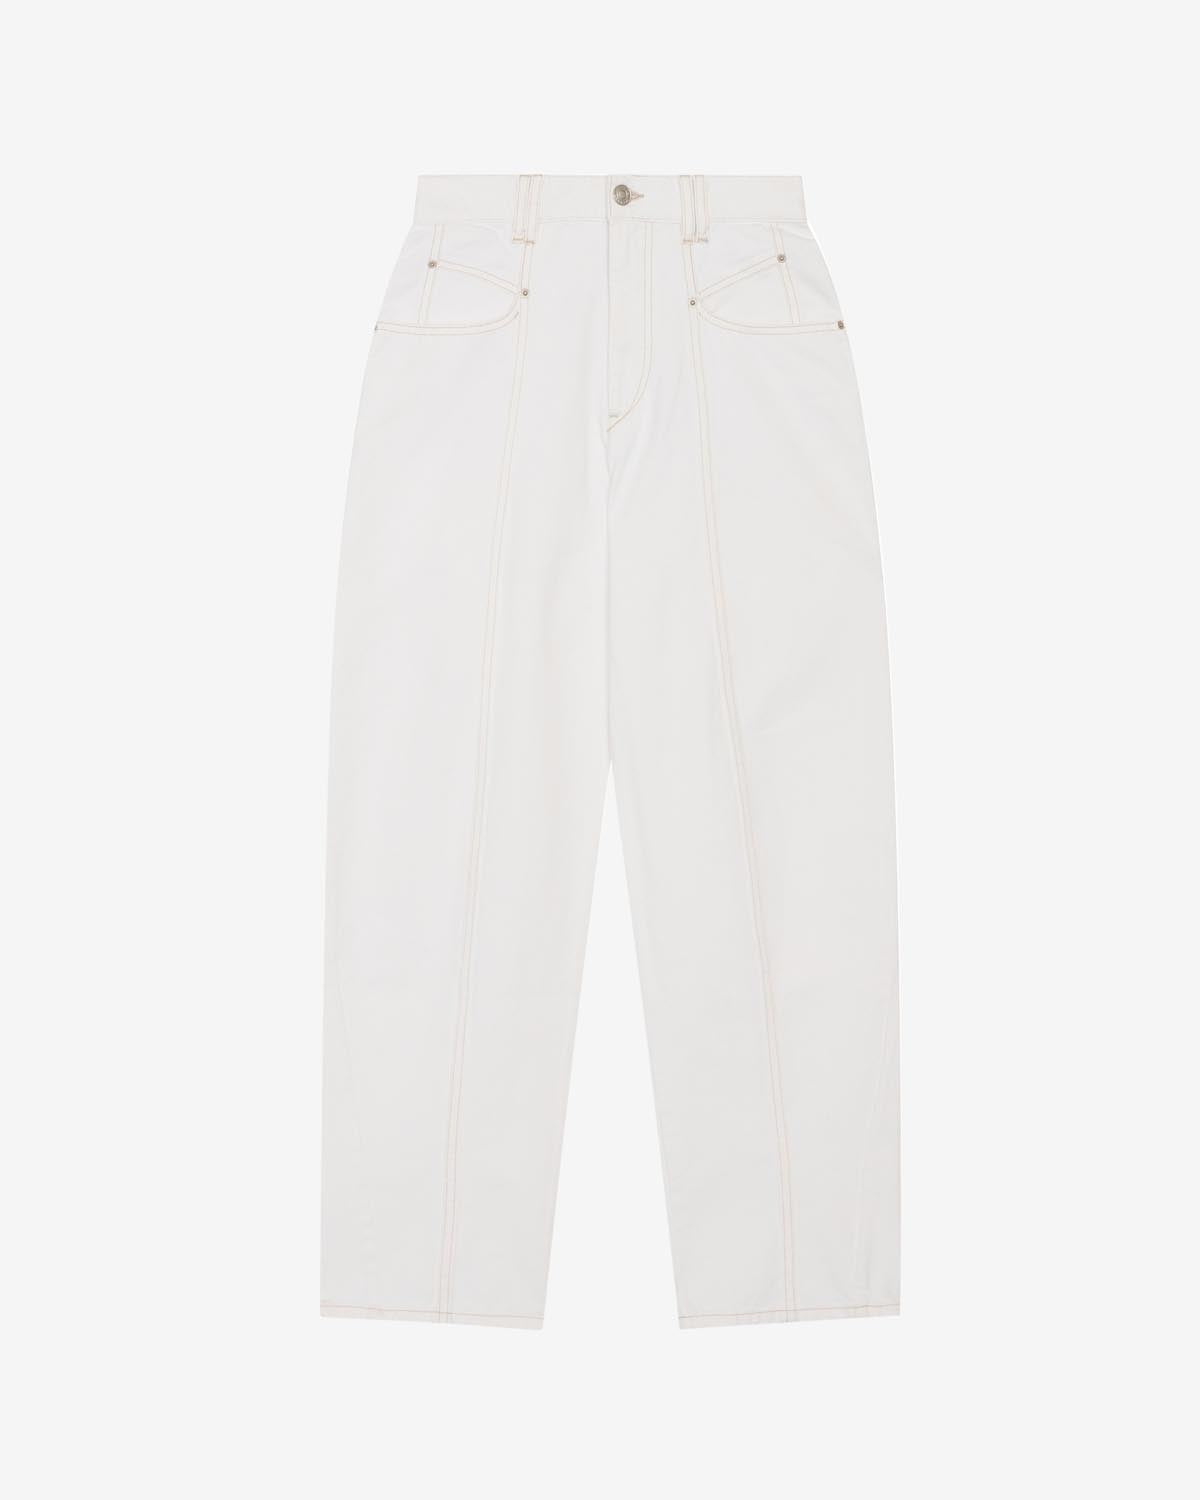 Vetan pantaloni Woman Bianco 1